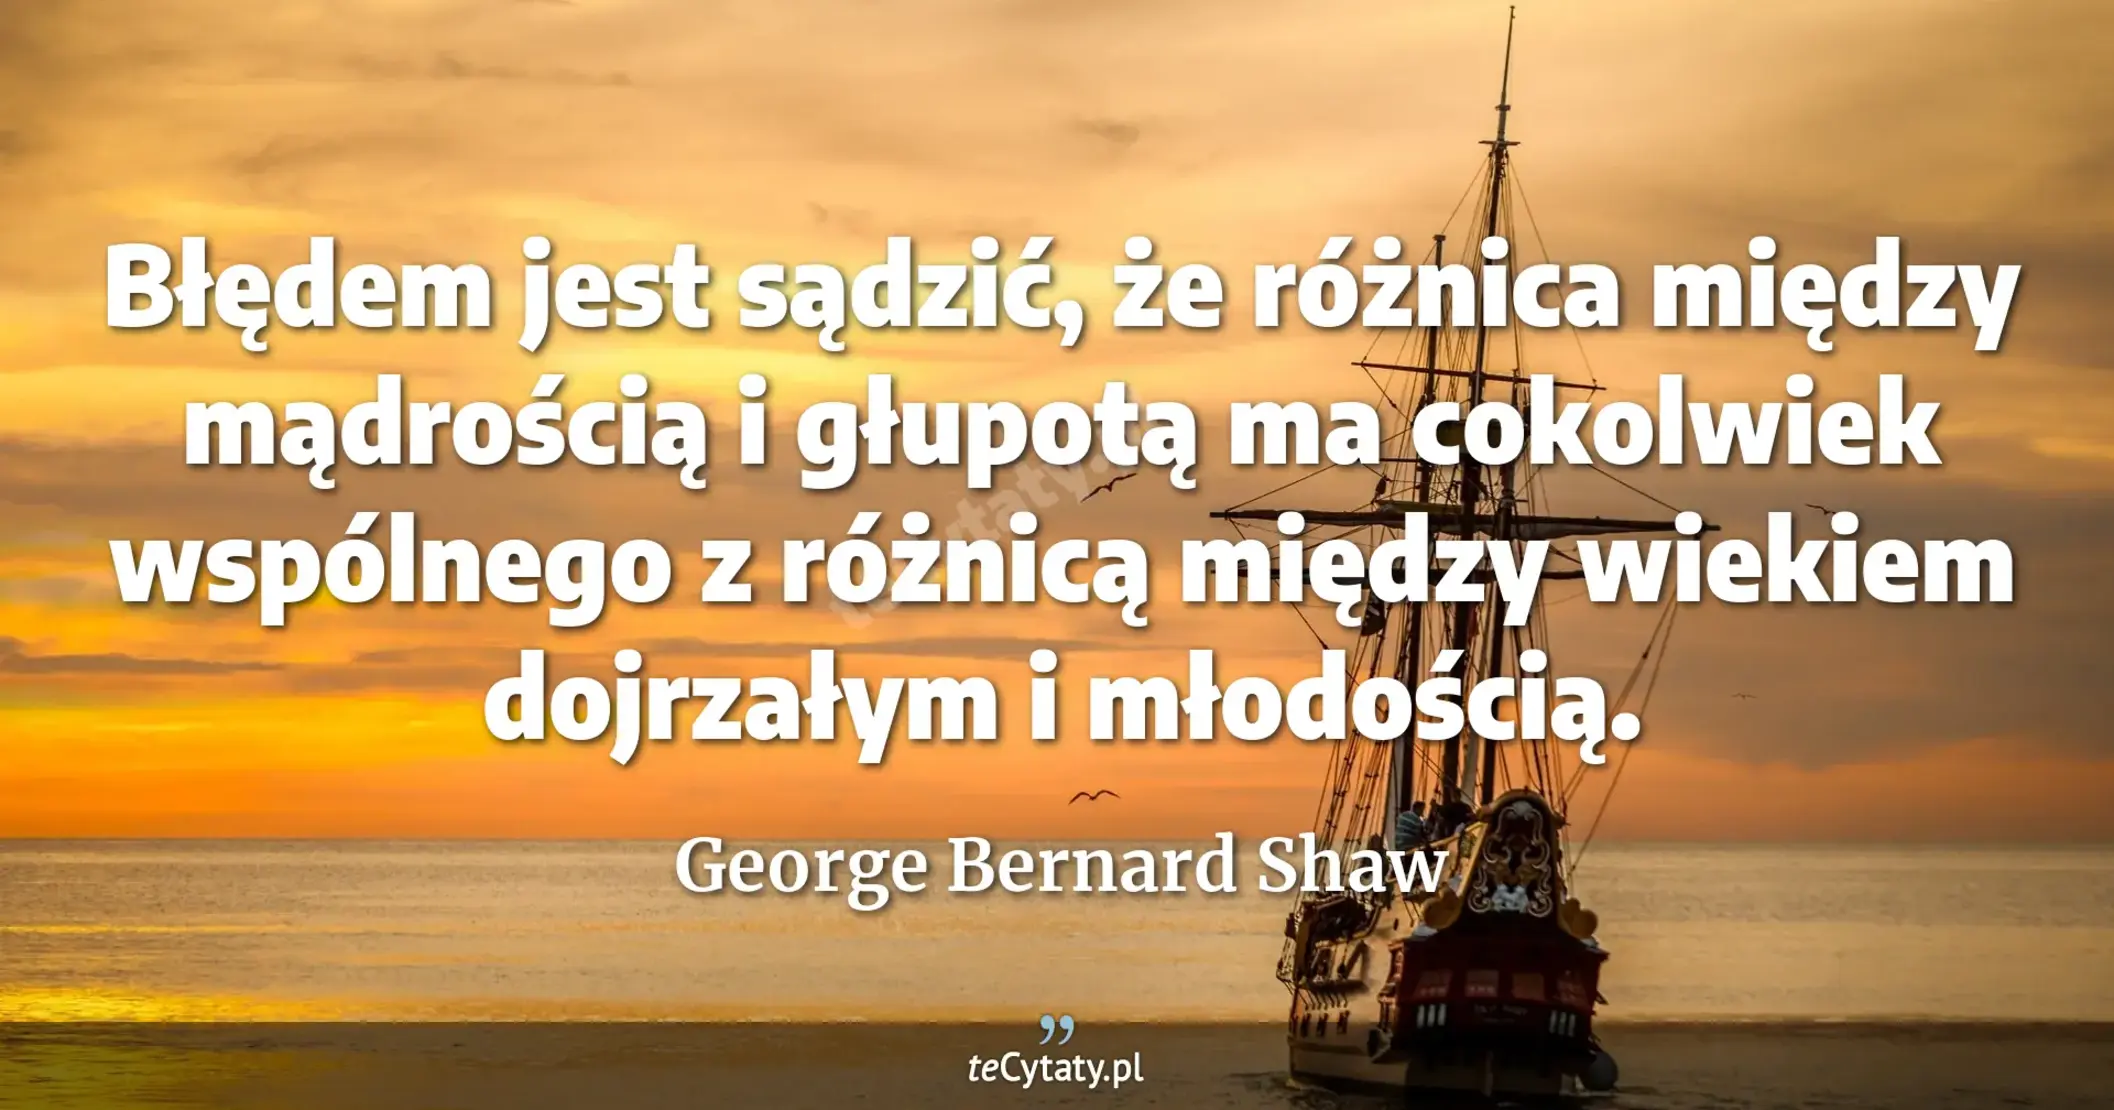 Błędem jest sądzić, że różnica między mądrością i głupotą ma cokolwiek wspólnego z różnicą między wiekiem dojrzałym i młodością. - George Bernard Shaw